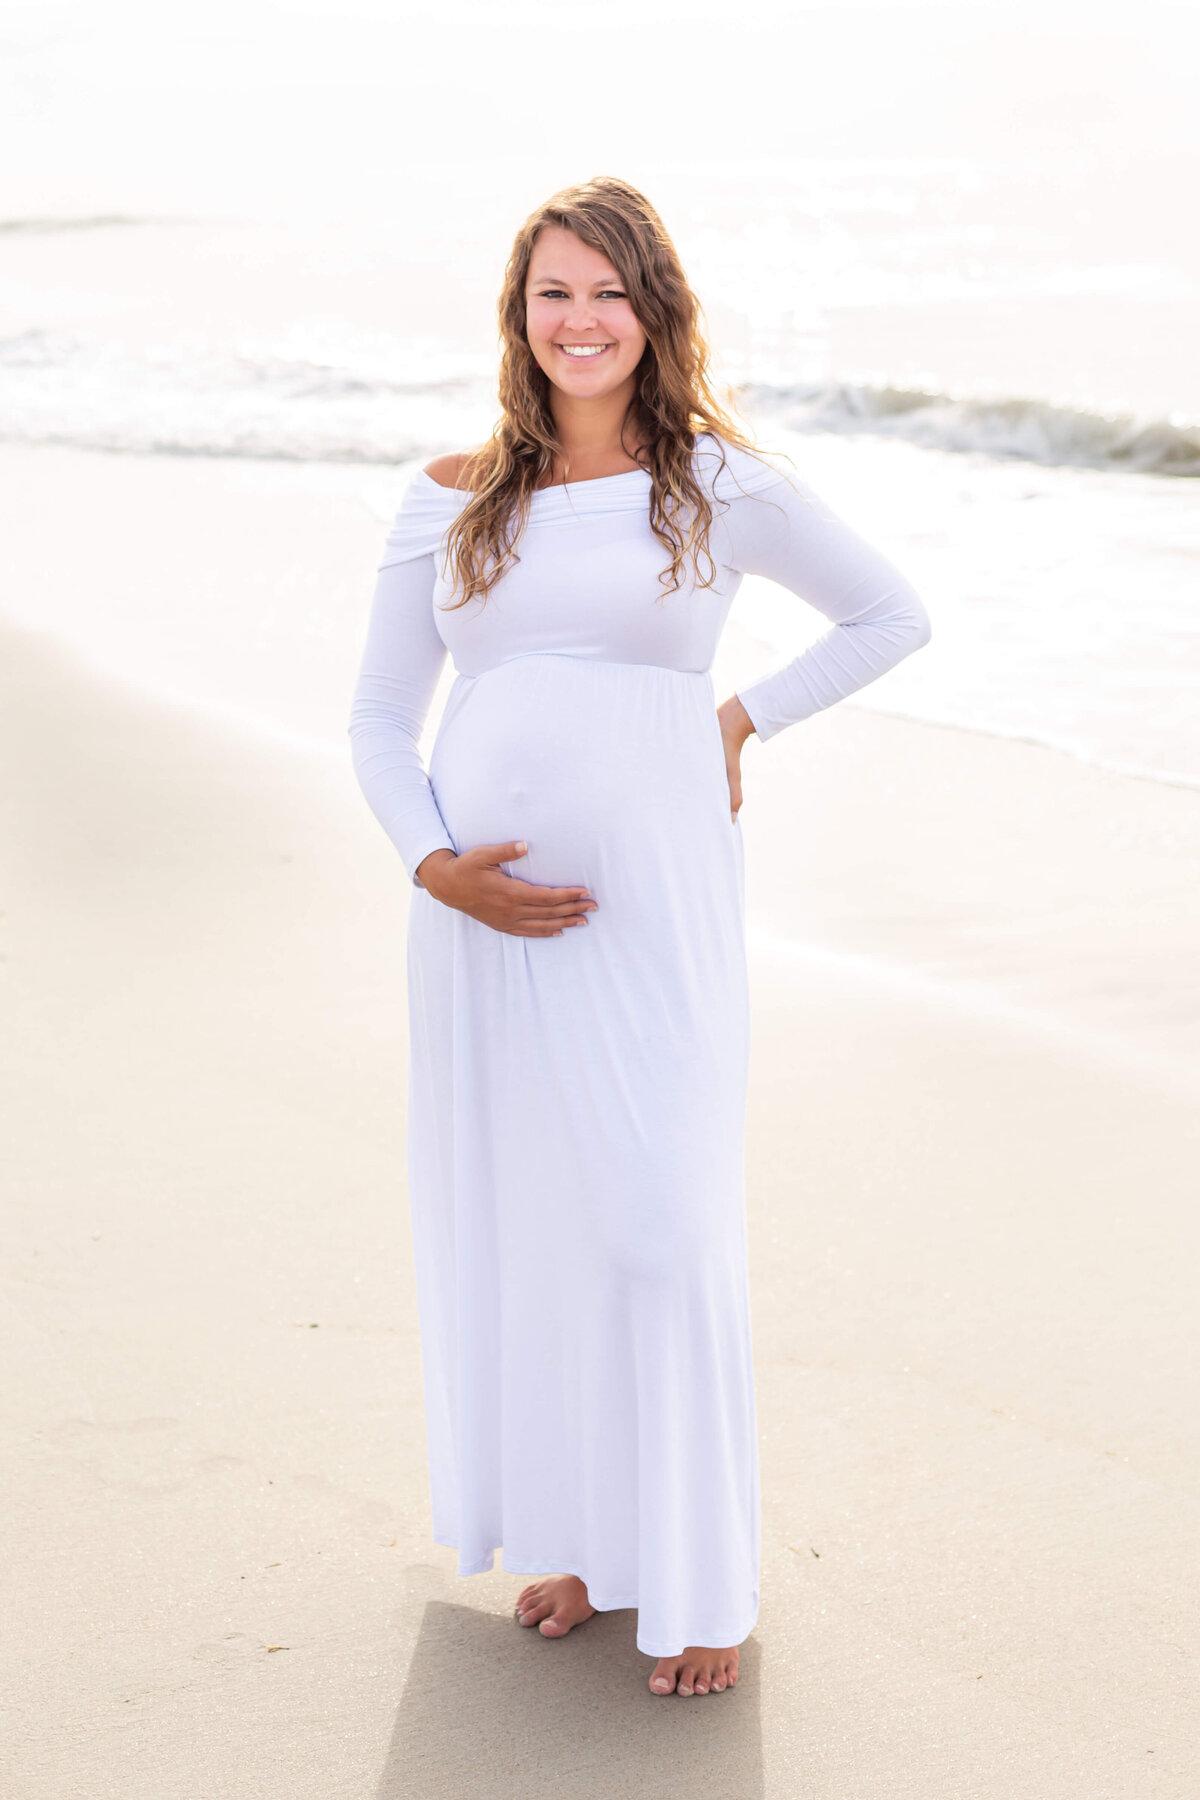 Beach Maternity Photoshoot South Carolina 7